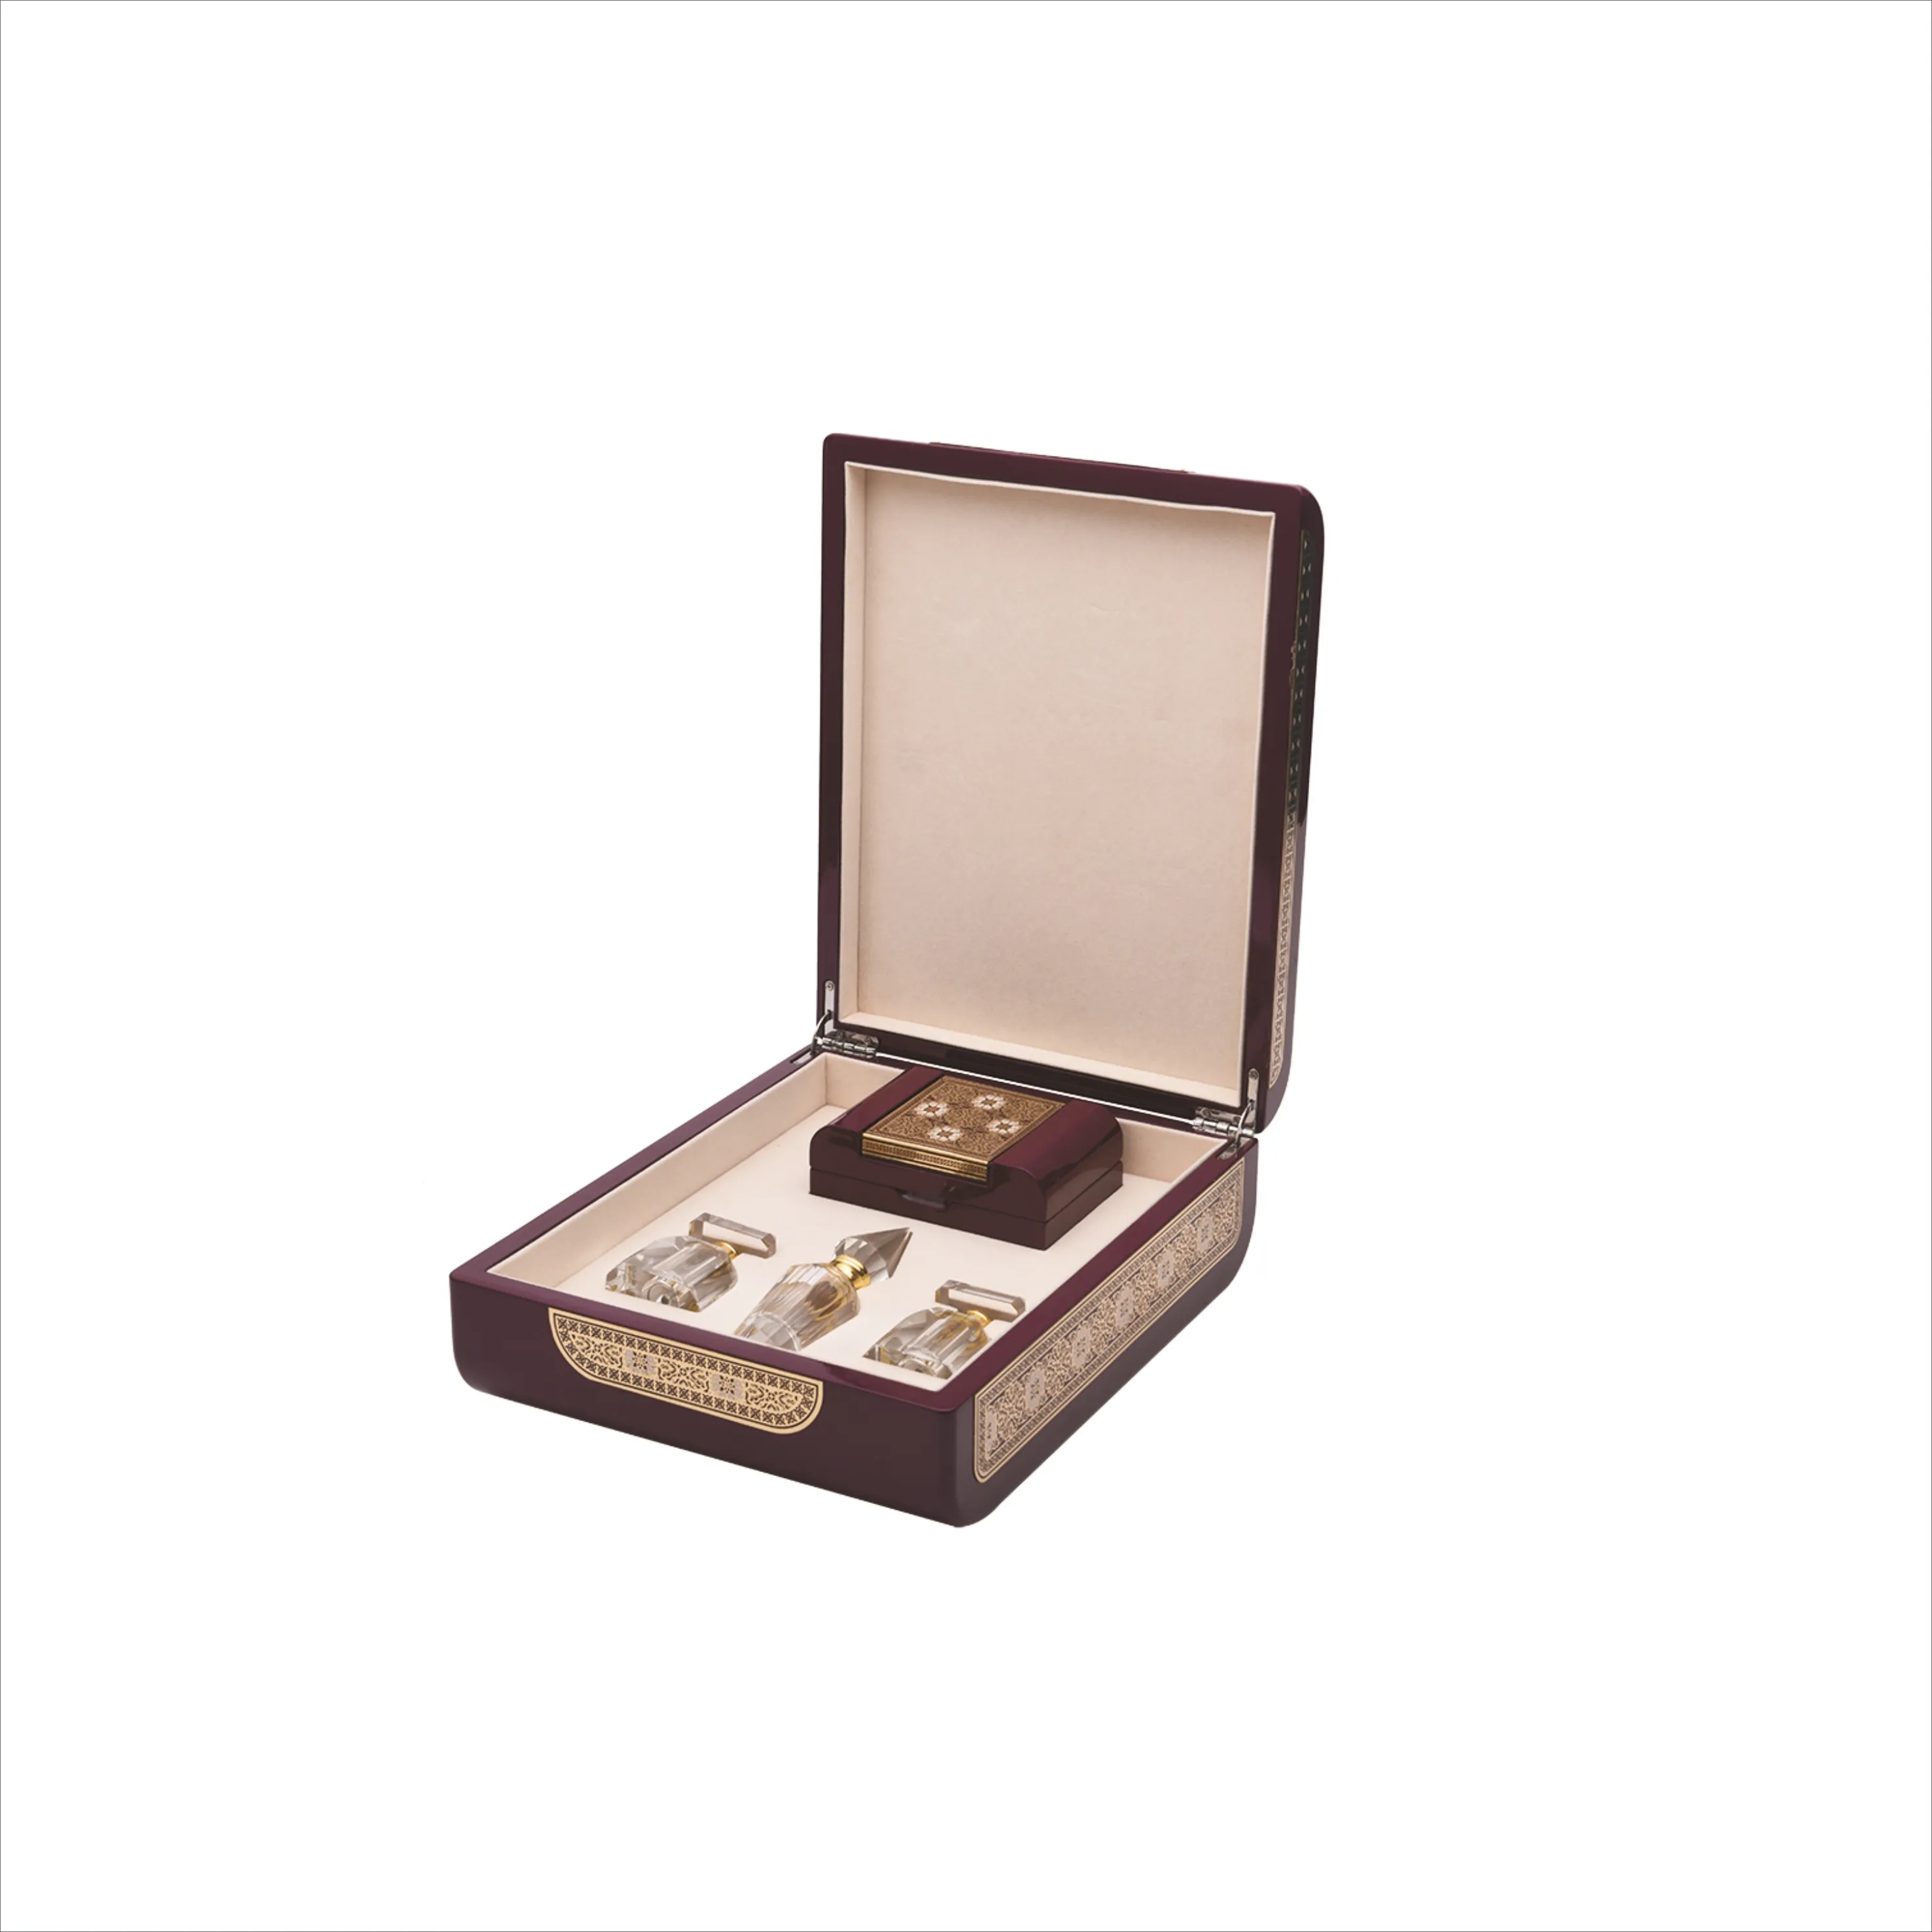 Perfume caixa de embalagem de luxo Caixa de madeira do Perfume Do Oriente Médio Com laca de piano